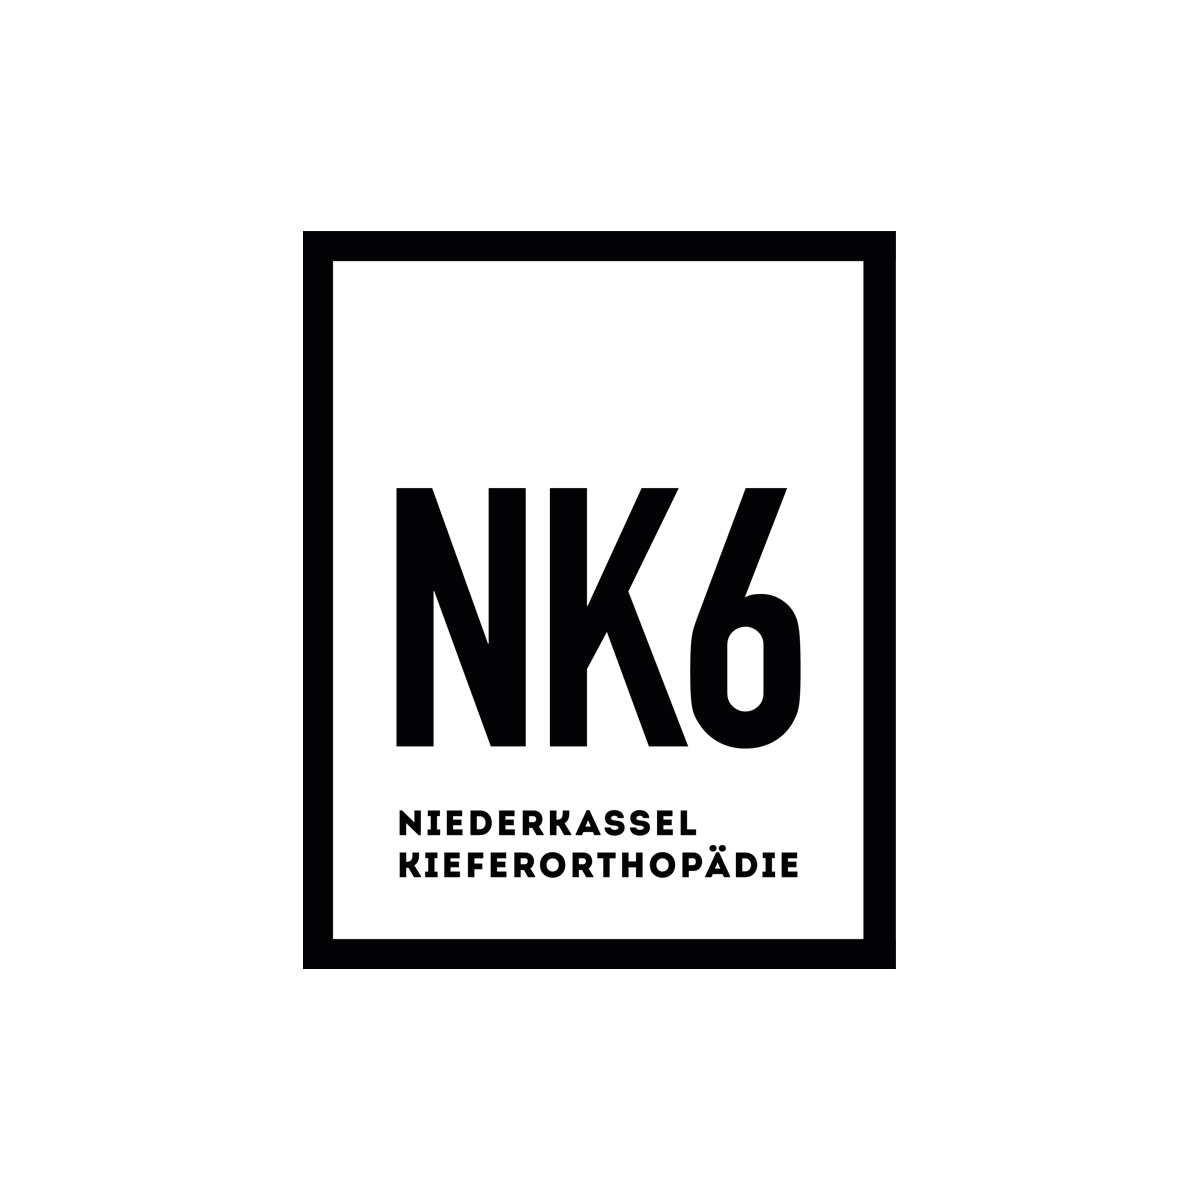 Logo NK 6 in Niederkasssel, Düsseldorf